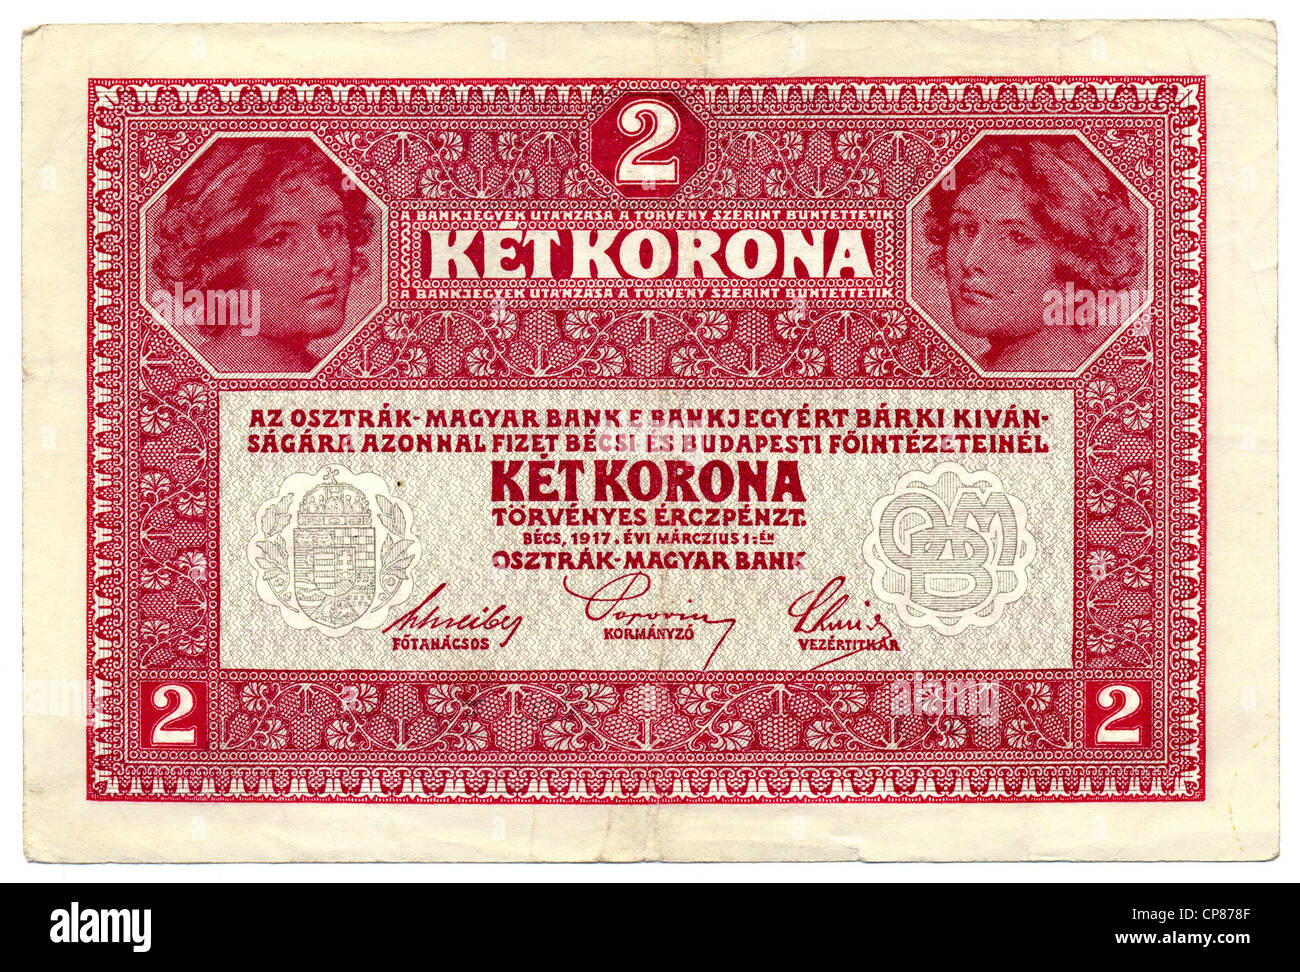 Historische Banknoten, Österreich, Deutsches Reich, Republik Deutschösterreich, Austro-ungarischen Bank, Rückseite mit ungarischen Schriftzug Stockfoto